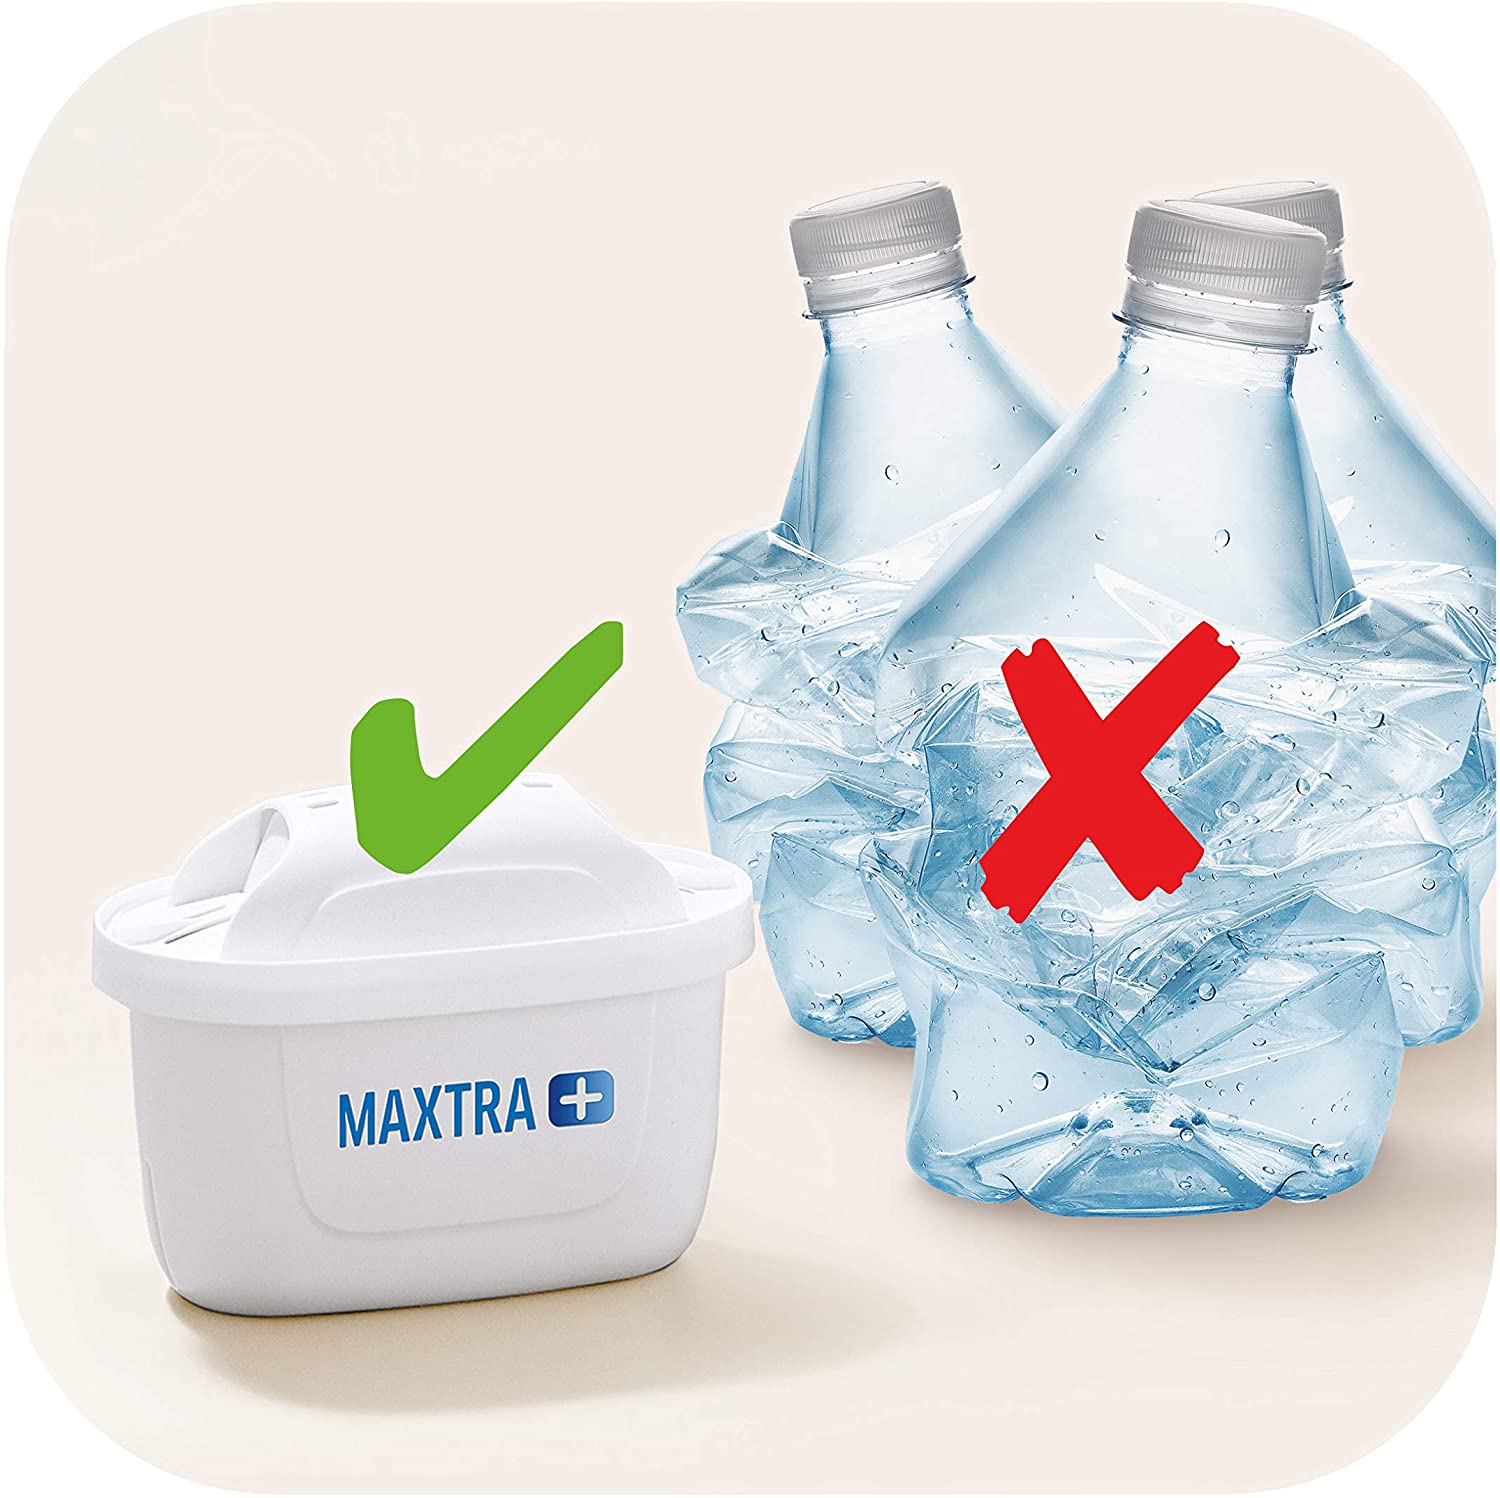 Brita  Filtros de agua Maxtra. Pack de 6 (5 + 1)